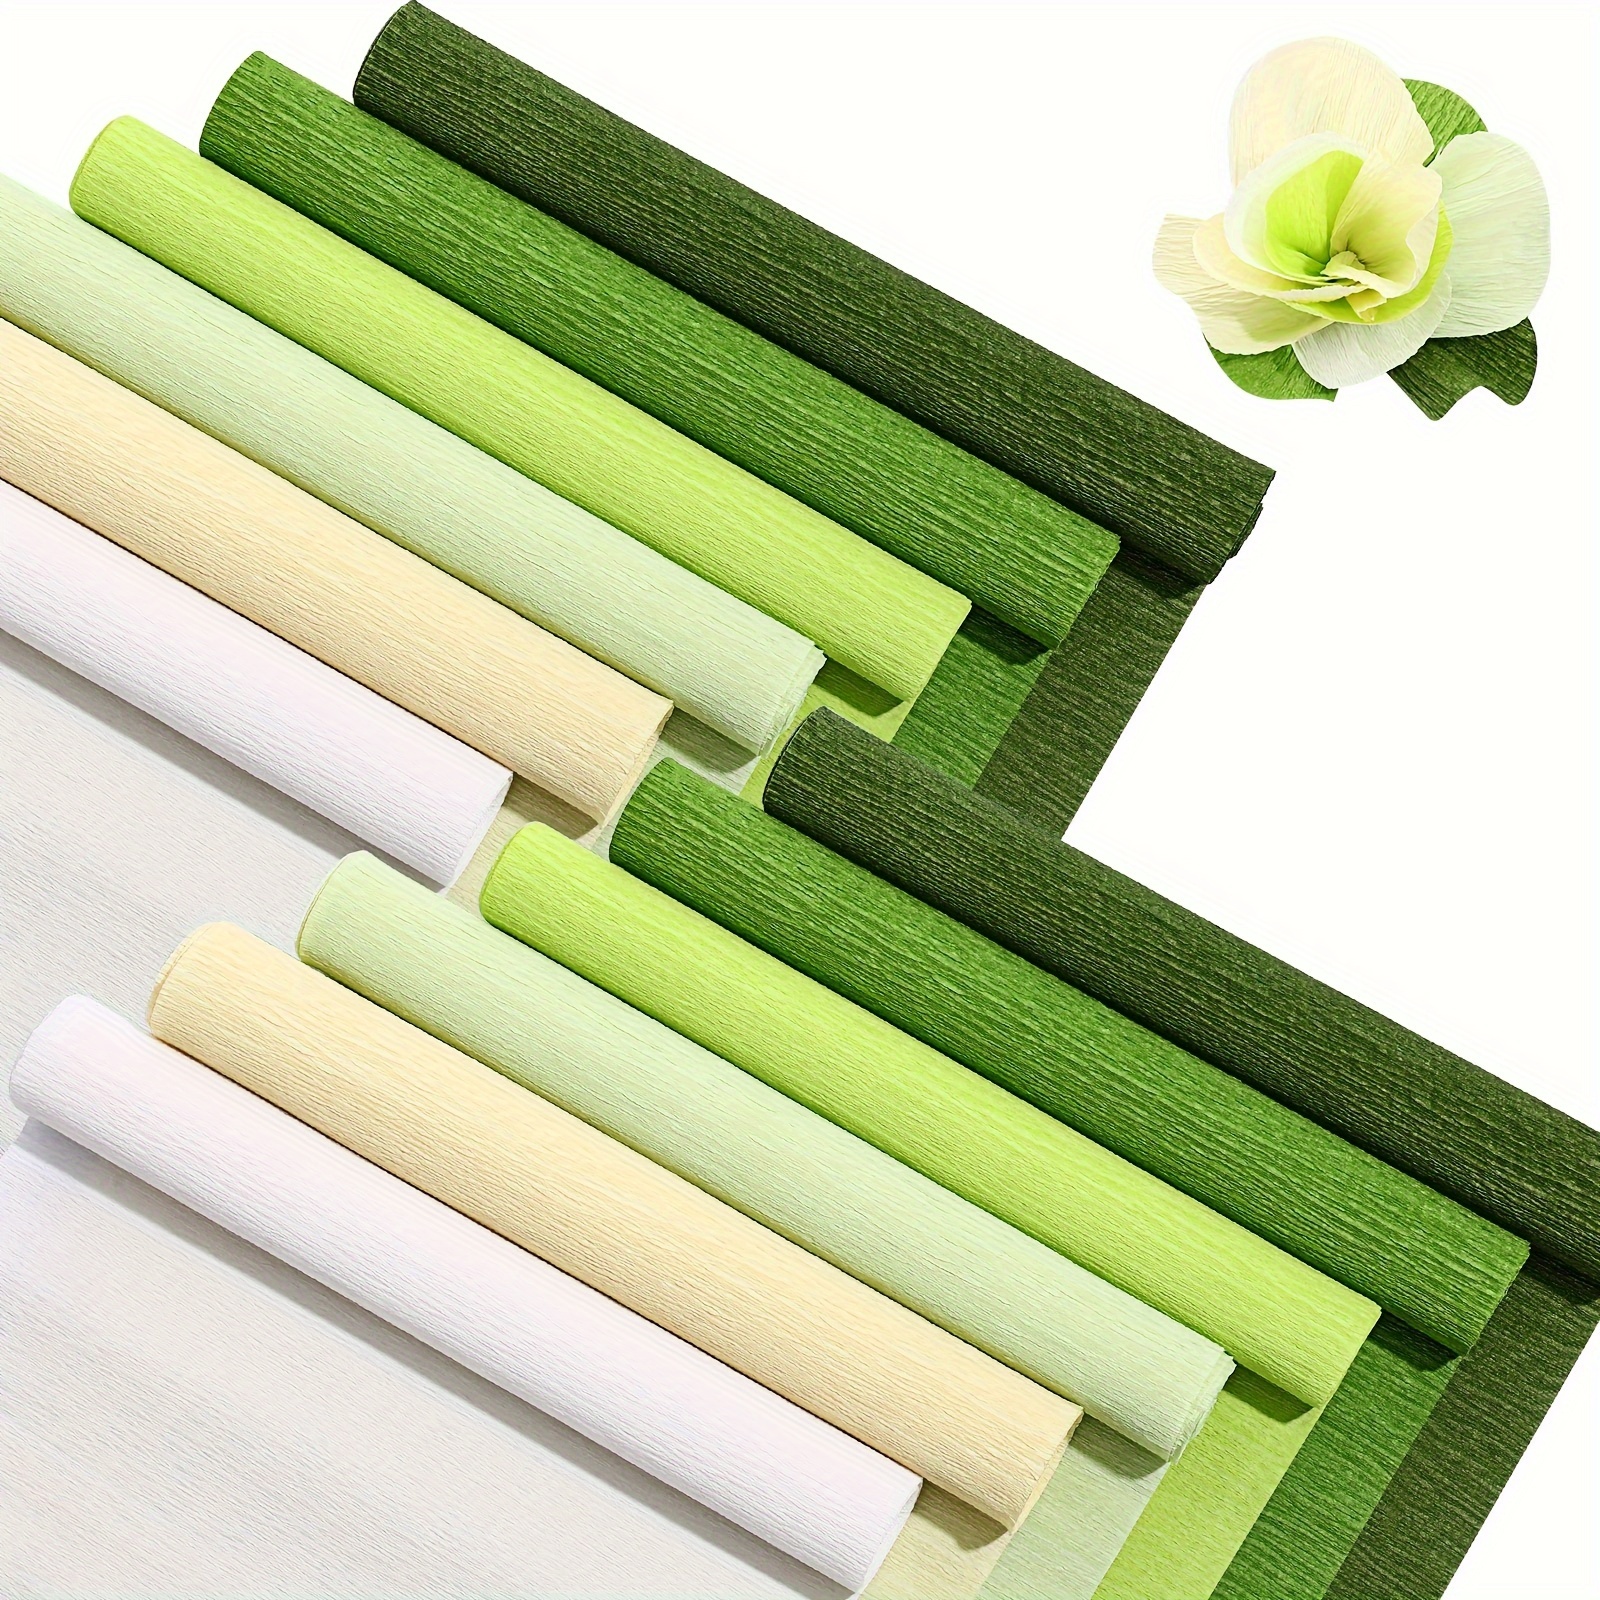  Rollos de papel crepé de 12 colores, hojas de papel crepé de 10  x 98 pulgadas de ancho con alambre floral y cintas florales verdes para  manualidades, papel de regalo, manualidades